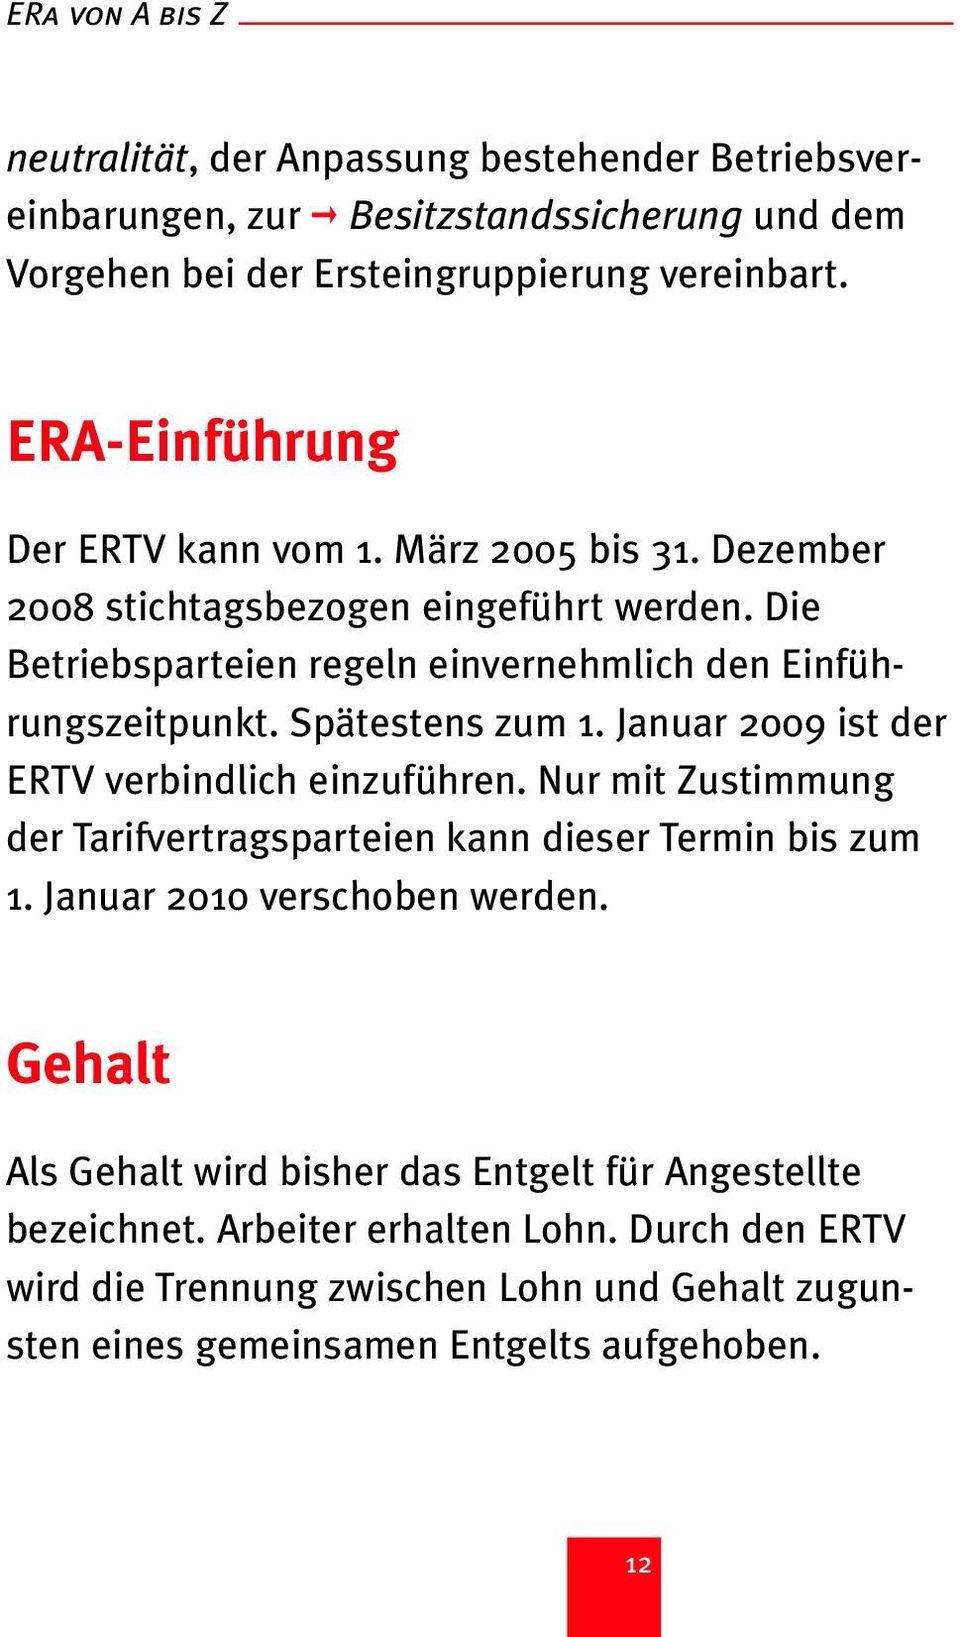 Spätestens zum 1. Januar 2009 ist der ERTV verbindlich einzuführen. Nur mit Zustimmung der Tarifvertragsparteien kann dieser Termin bis zum 1. Januar 2010 verschoben werden.